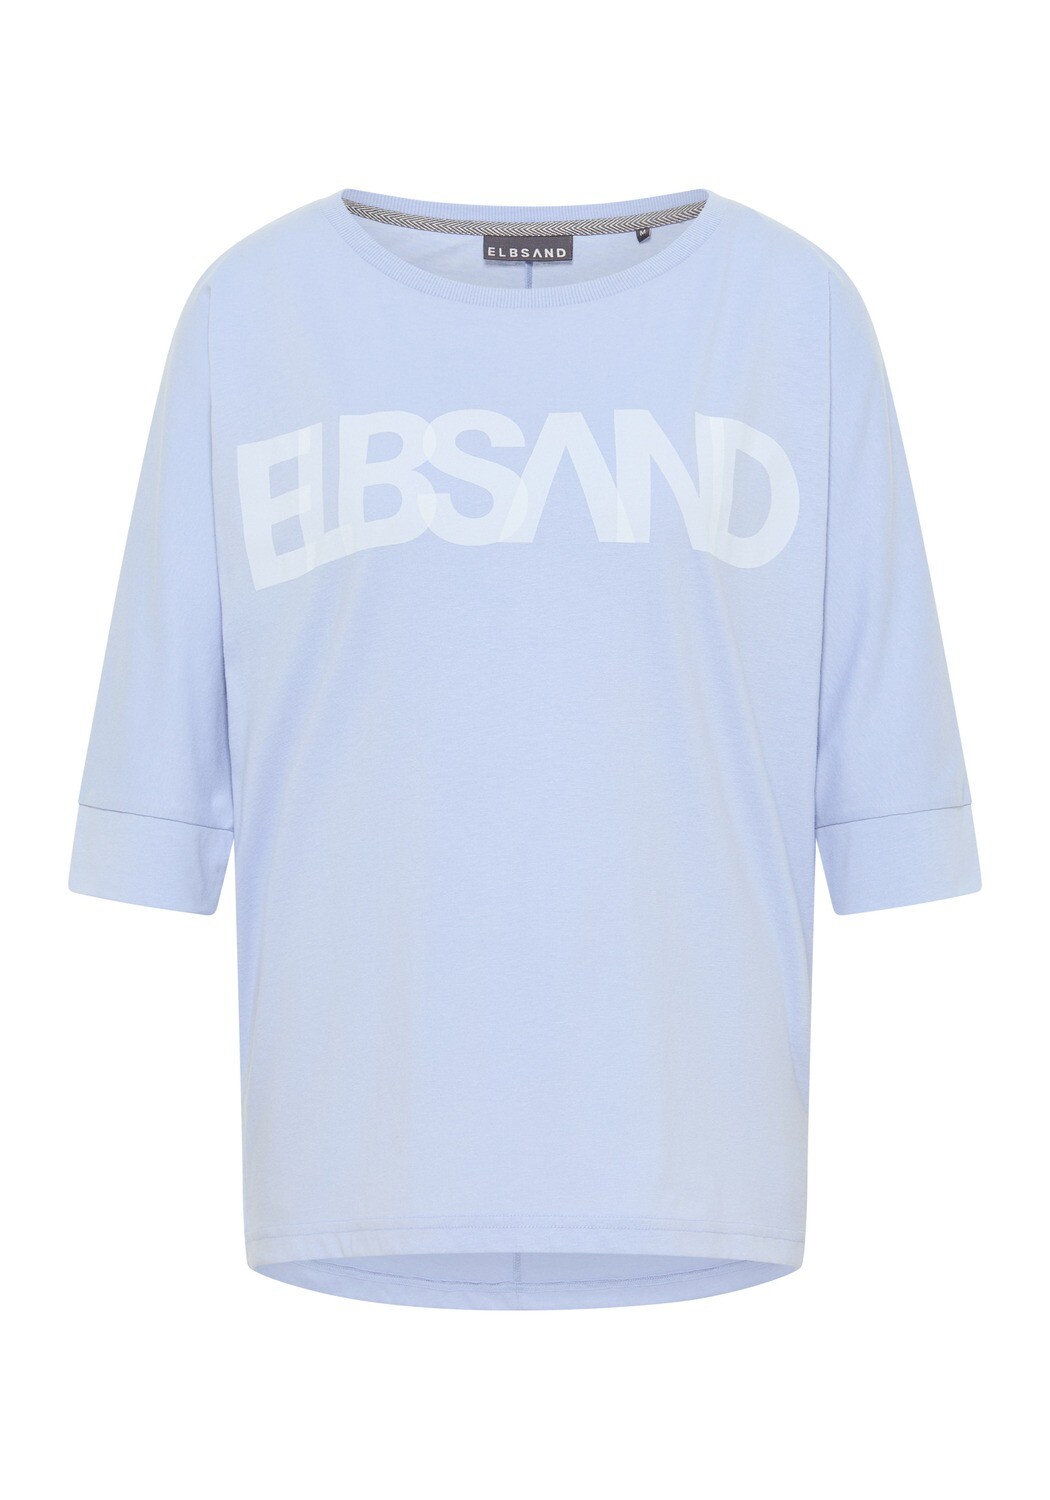 Elbsand Imani T-Shirt hellblau, Größe: S